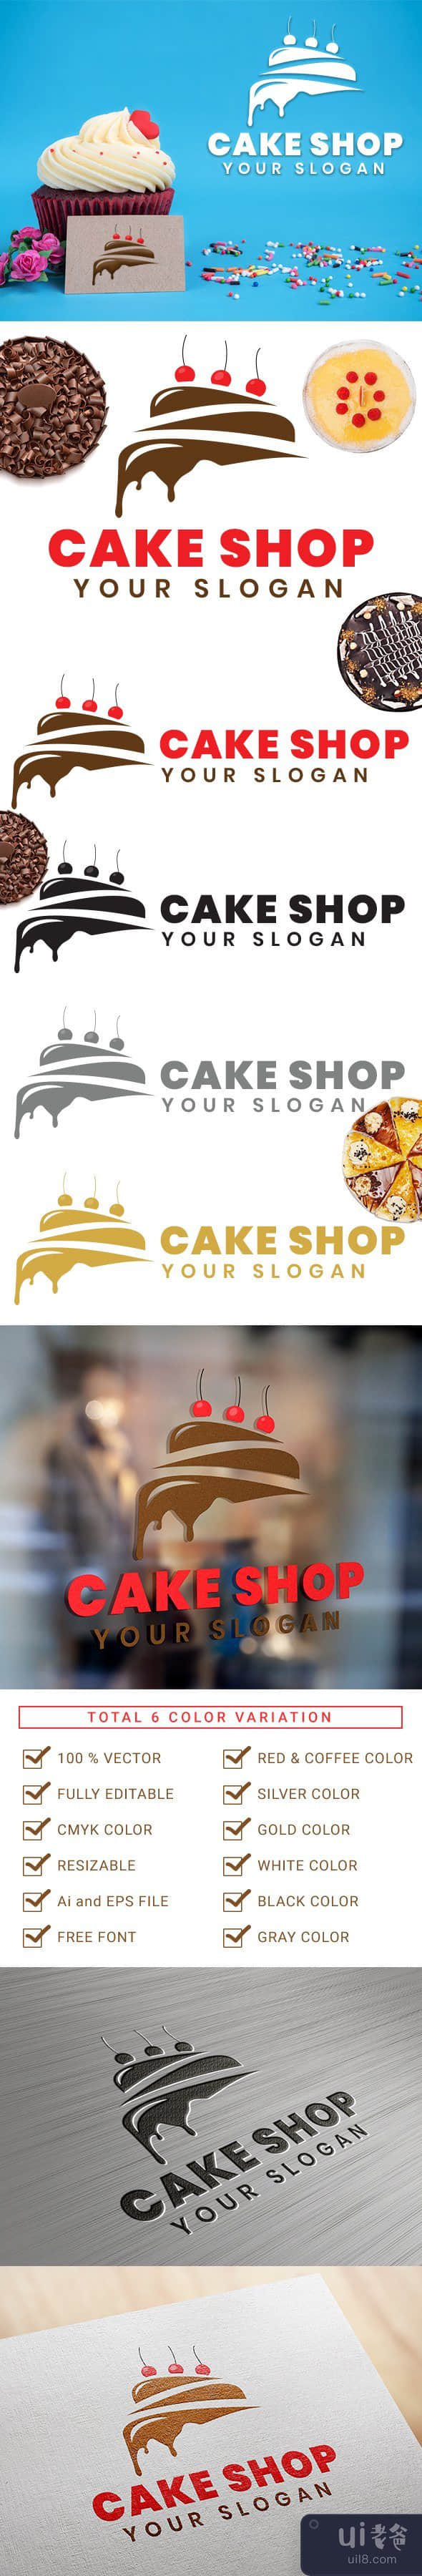 蛋糕店标志(Cake Shop Logo)插图